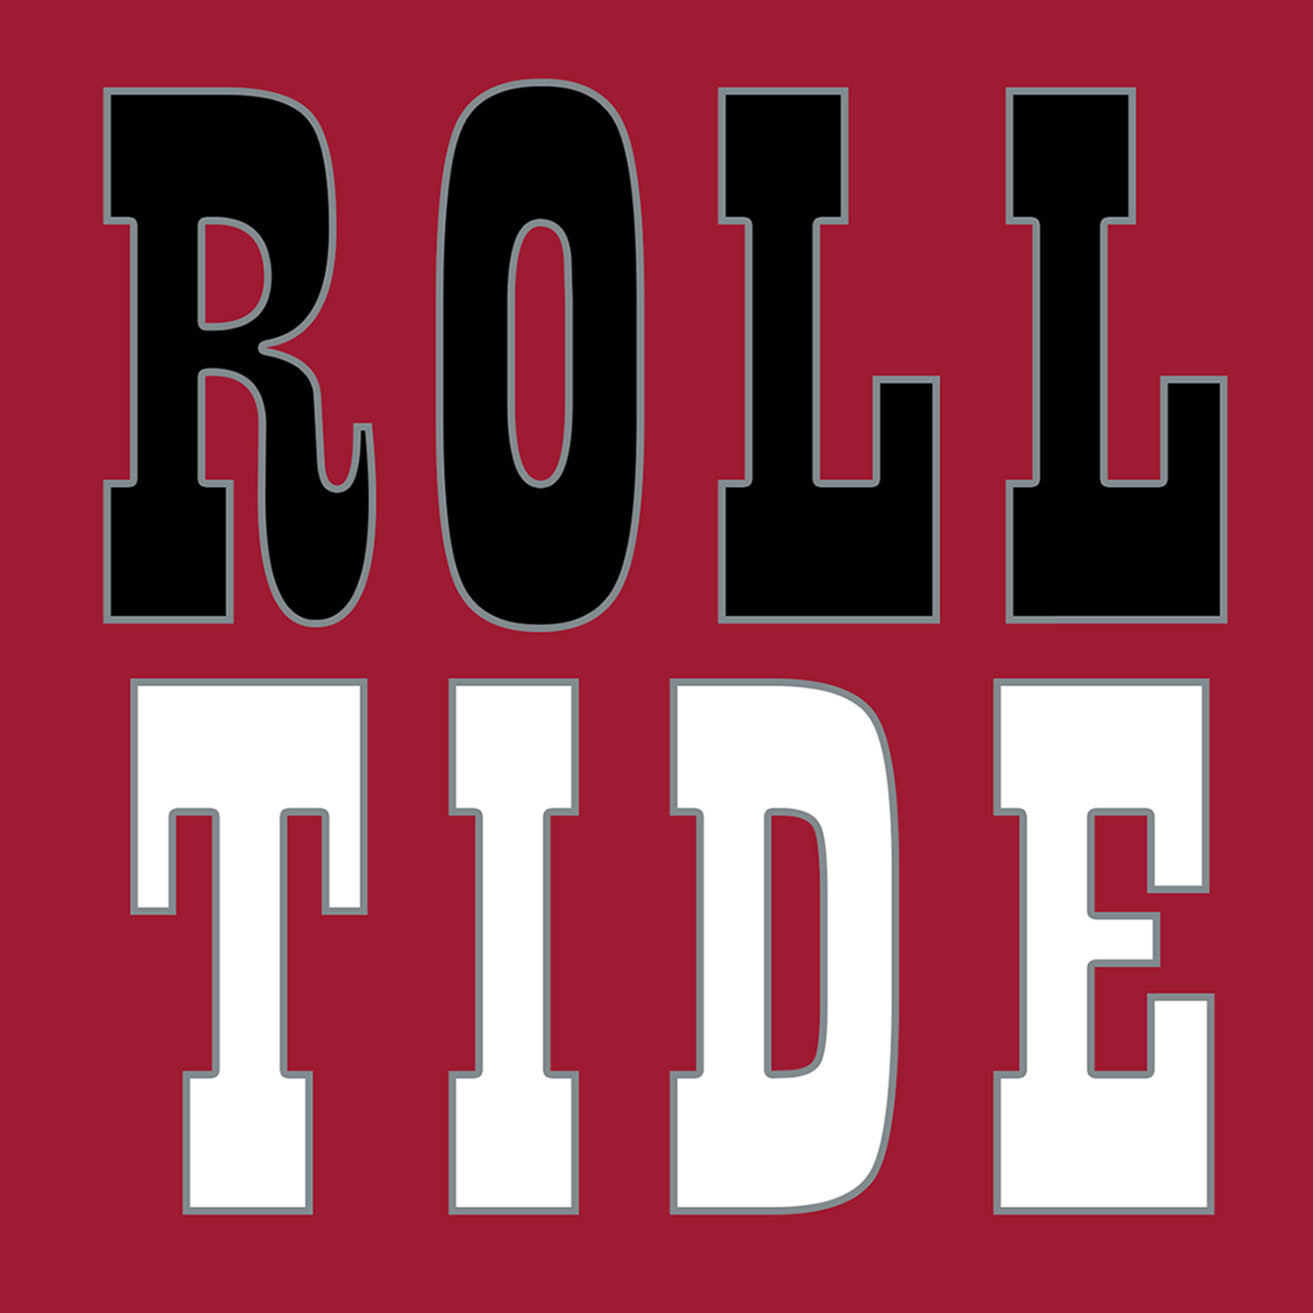 Coaster Set - Alabama Crimson Tide - ROLL TIDE - Set of 4